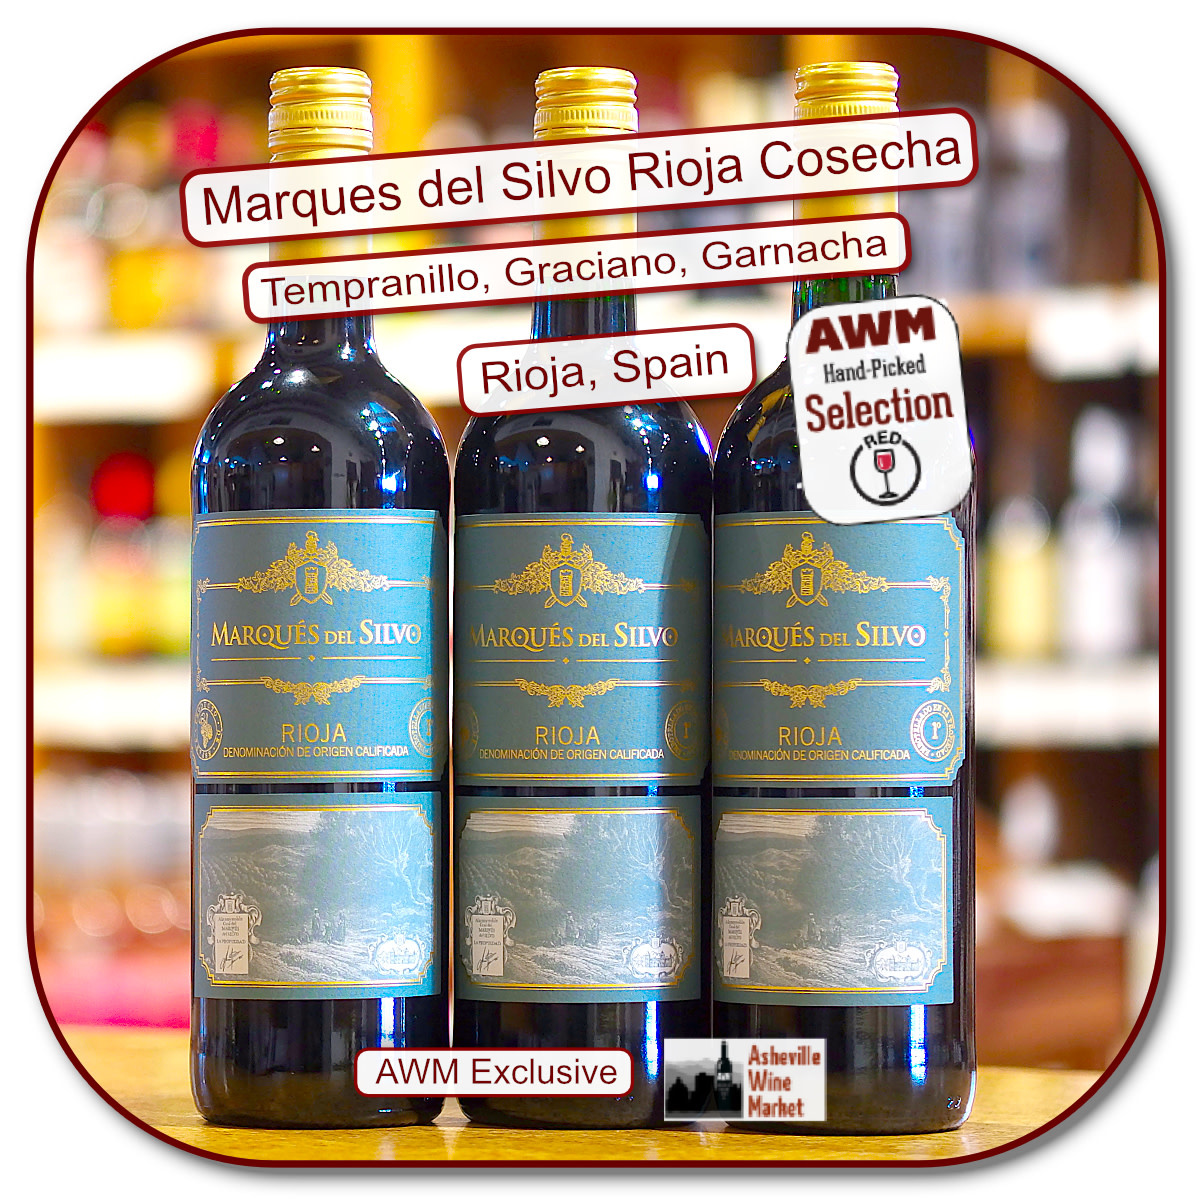 Marques del Asheville Market 2019 Wine The - Silvo Rioja Cosecha Tinto